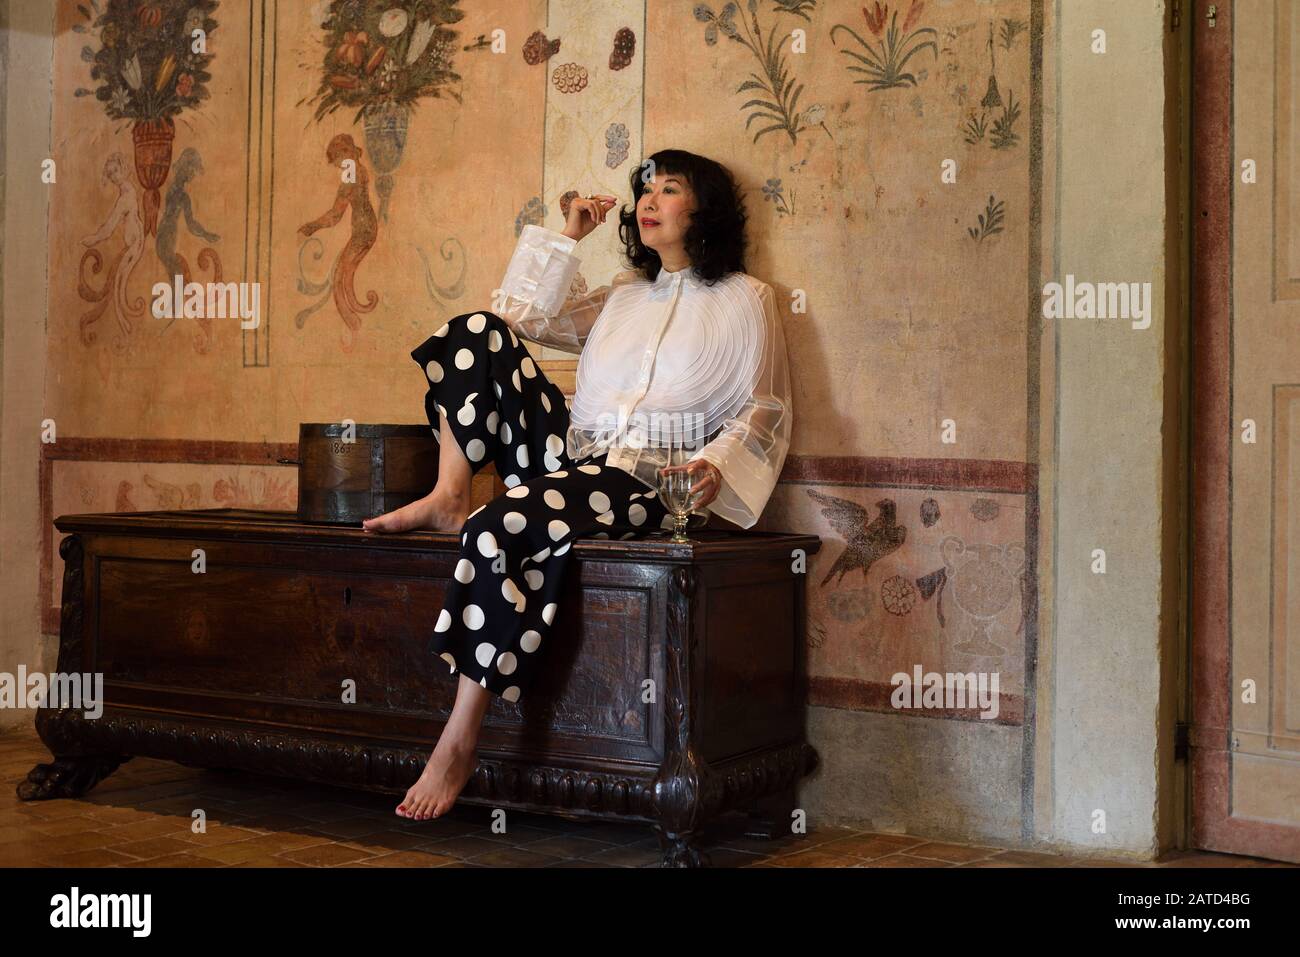 Una mujer sofisticada y elegante glamurosa sentada en un baúl antiguo en una lujosa sala de castillo medieval con trompe l'oeil pintado Foto de stock